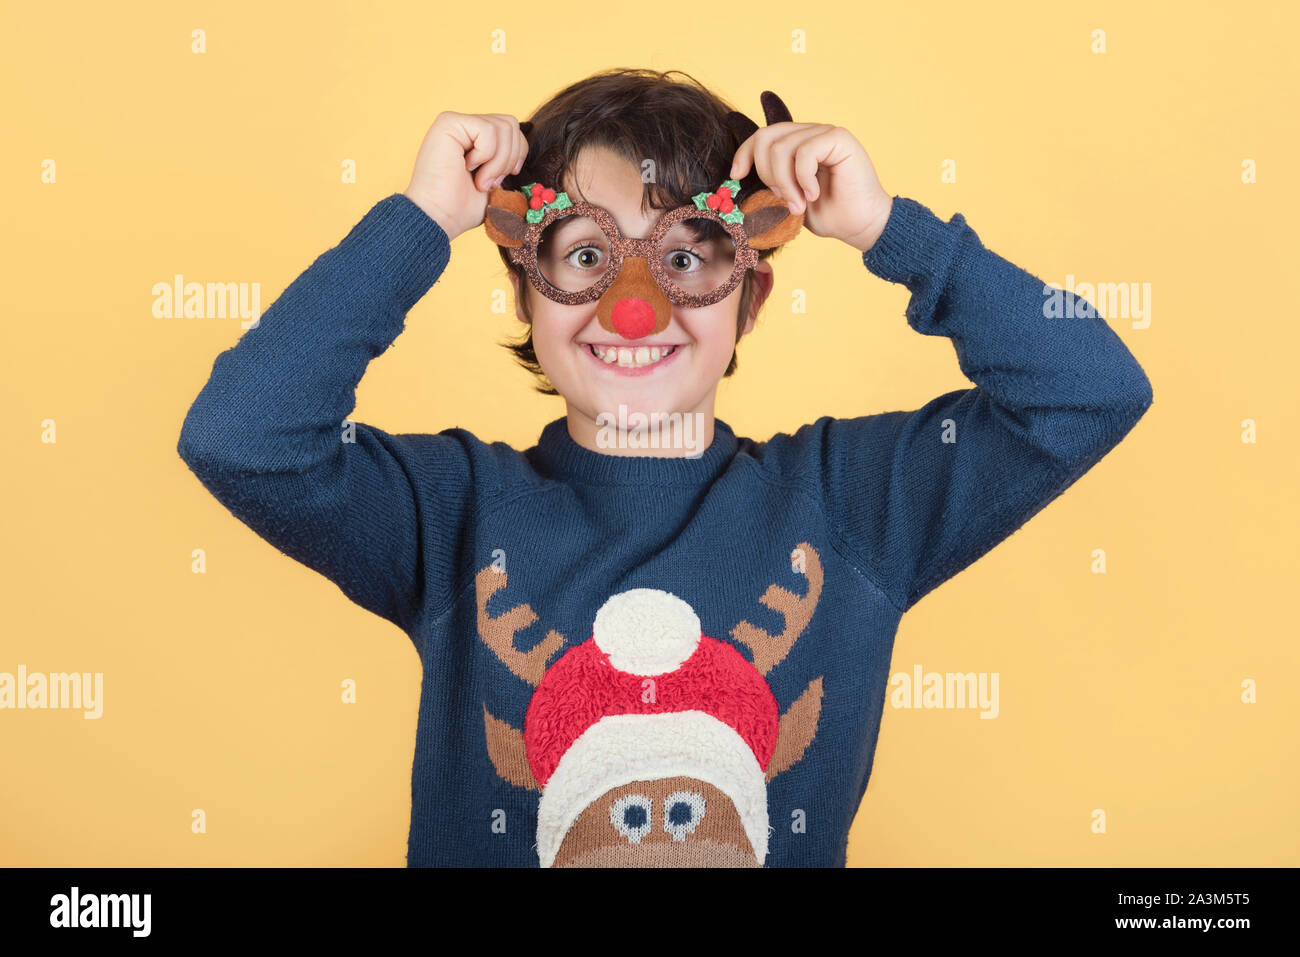 Joyeux Noël.Funny enfant dans un costume de noël Renne Rudolph sur fond jaune Banque D'Images